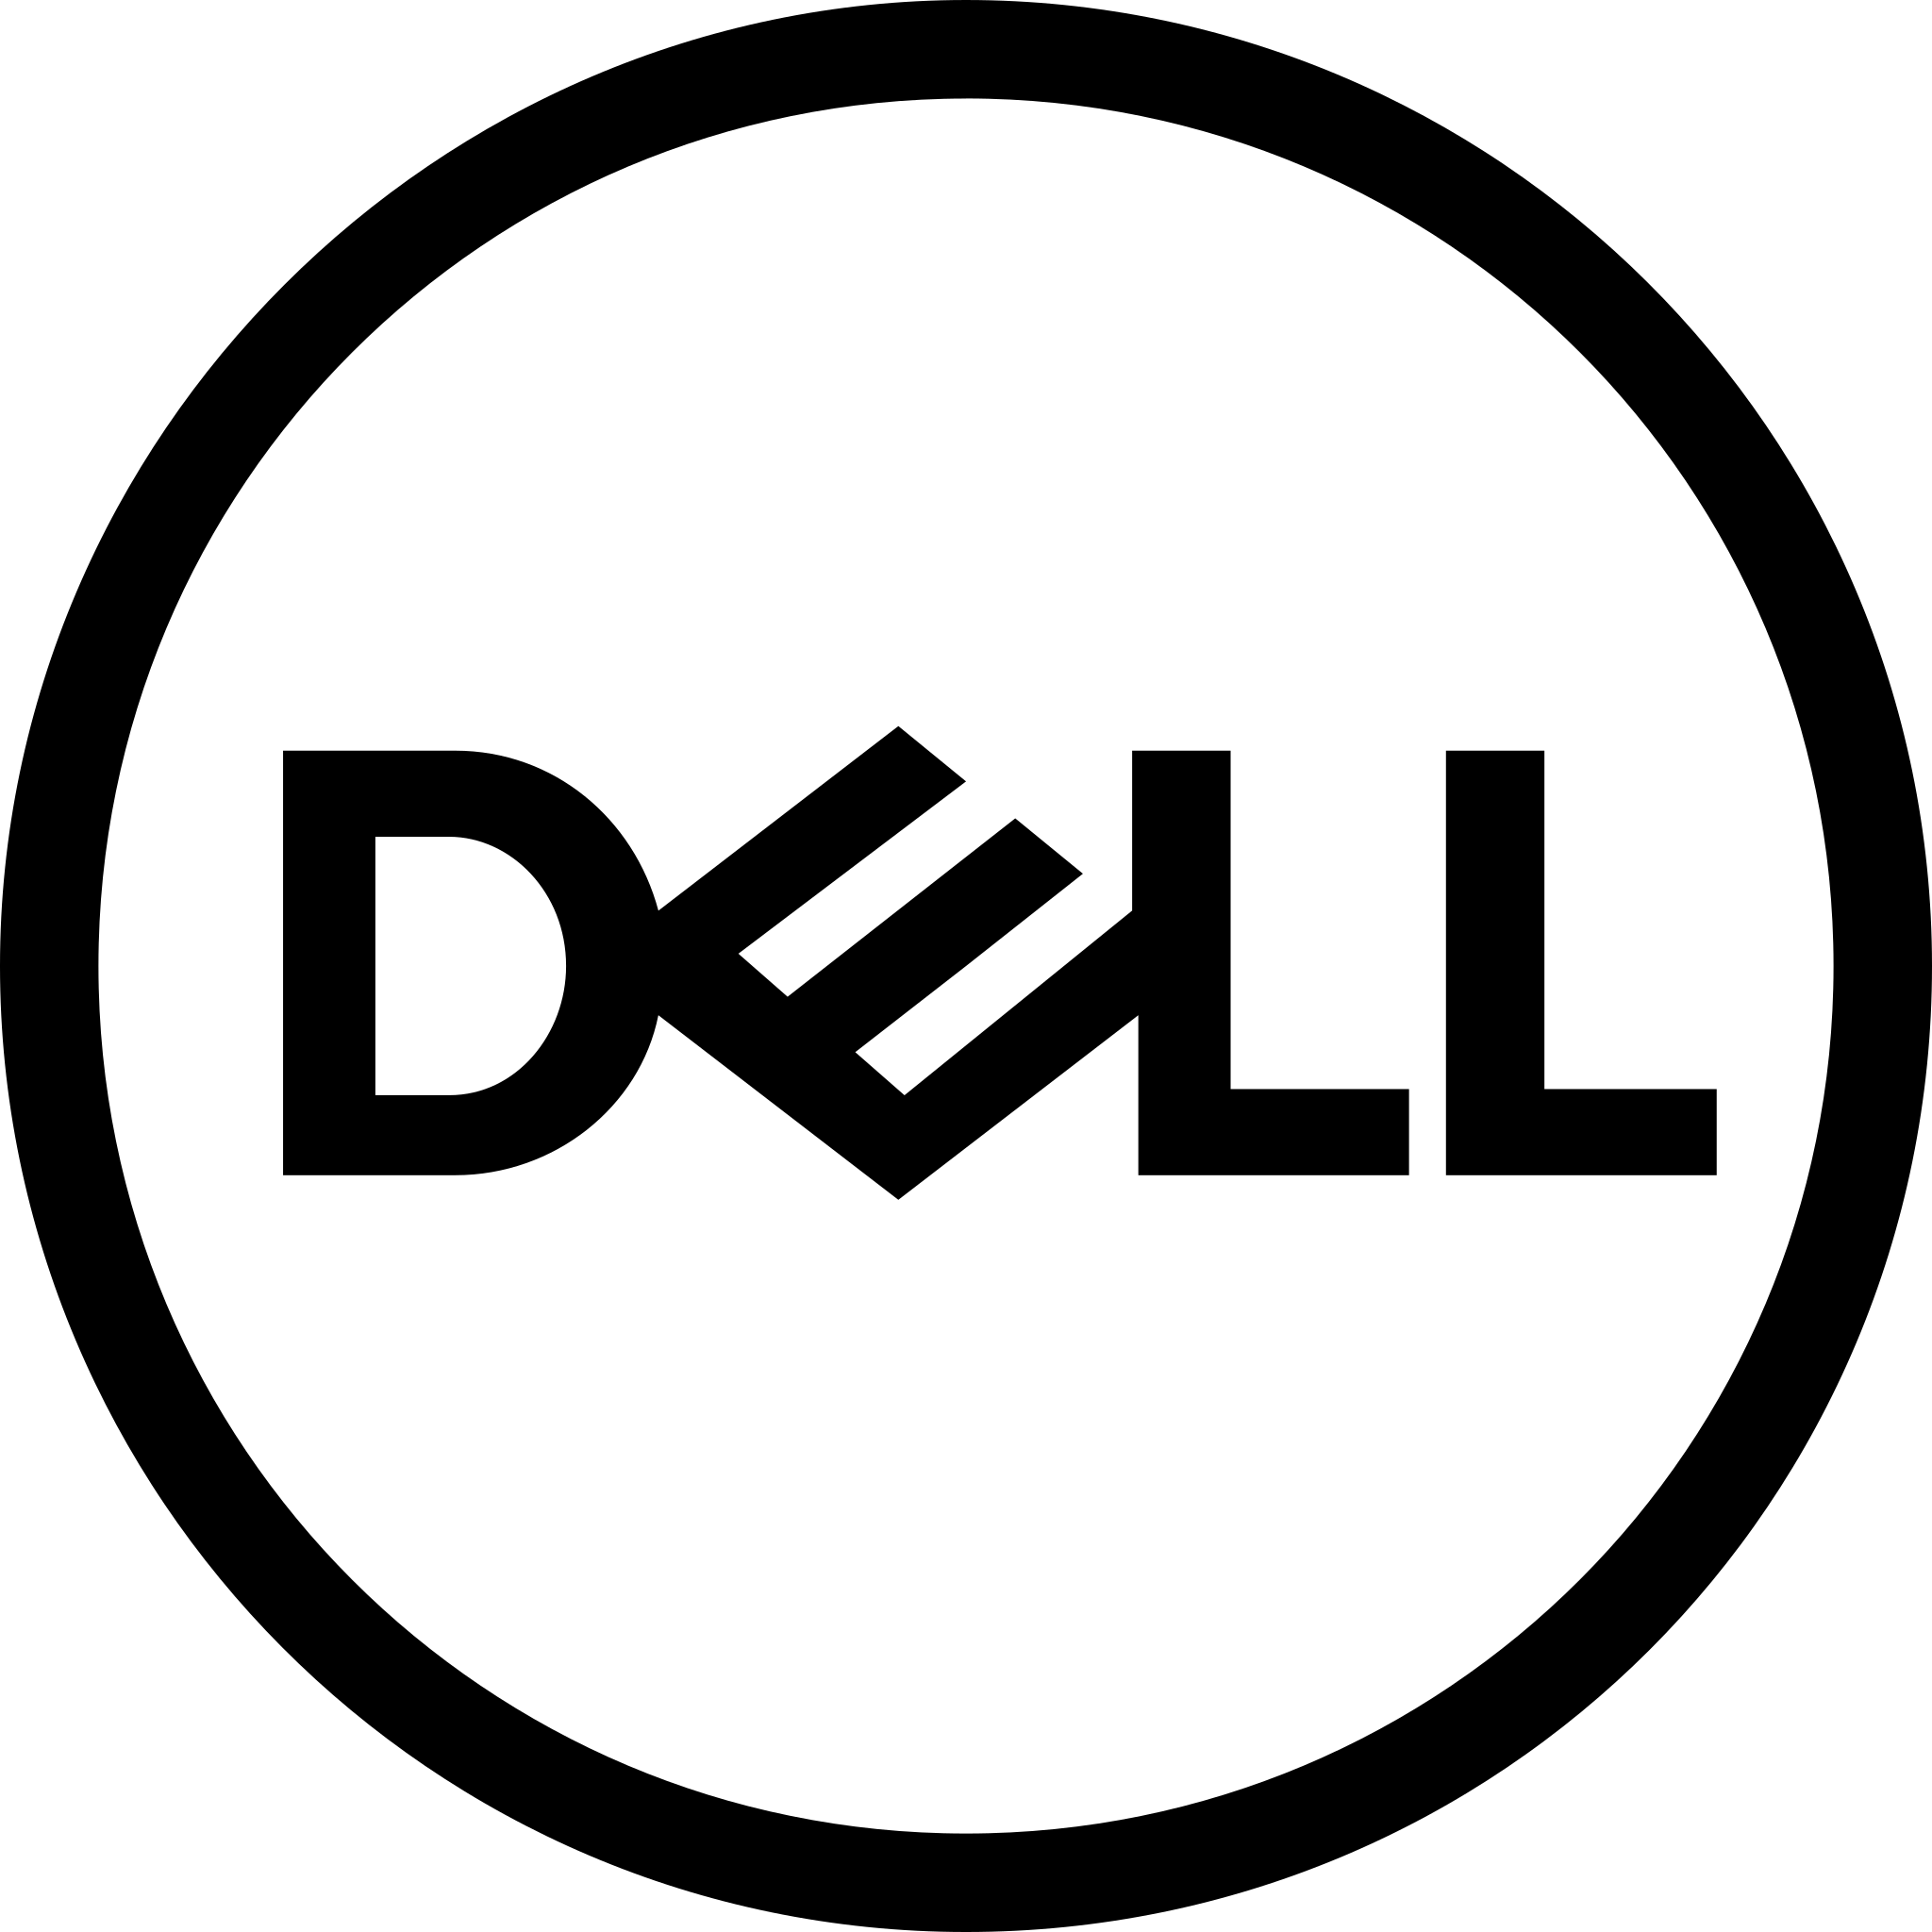 Dell_logo_2016_black.svg.png